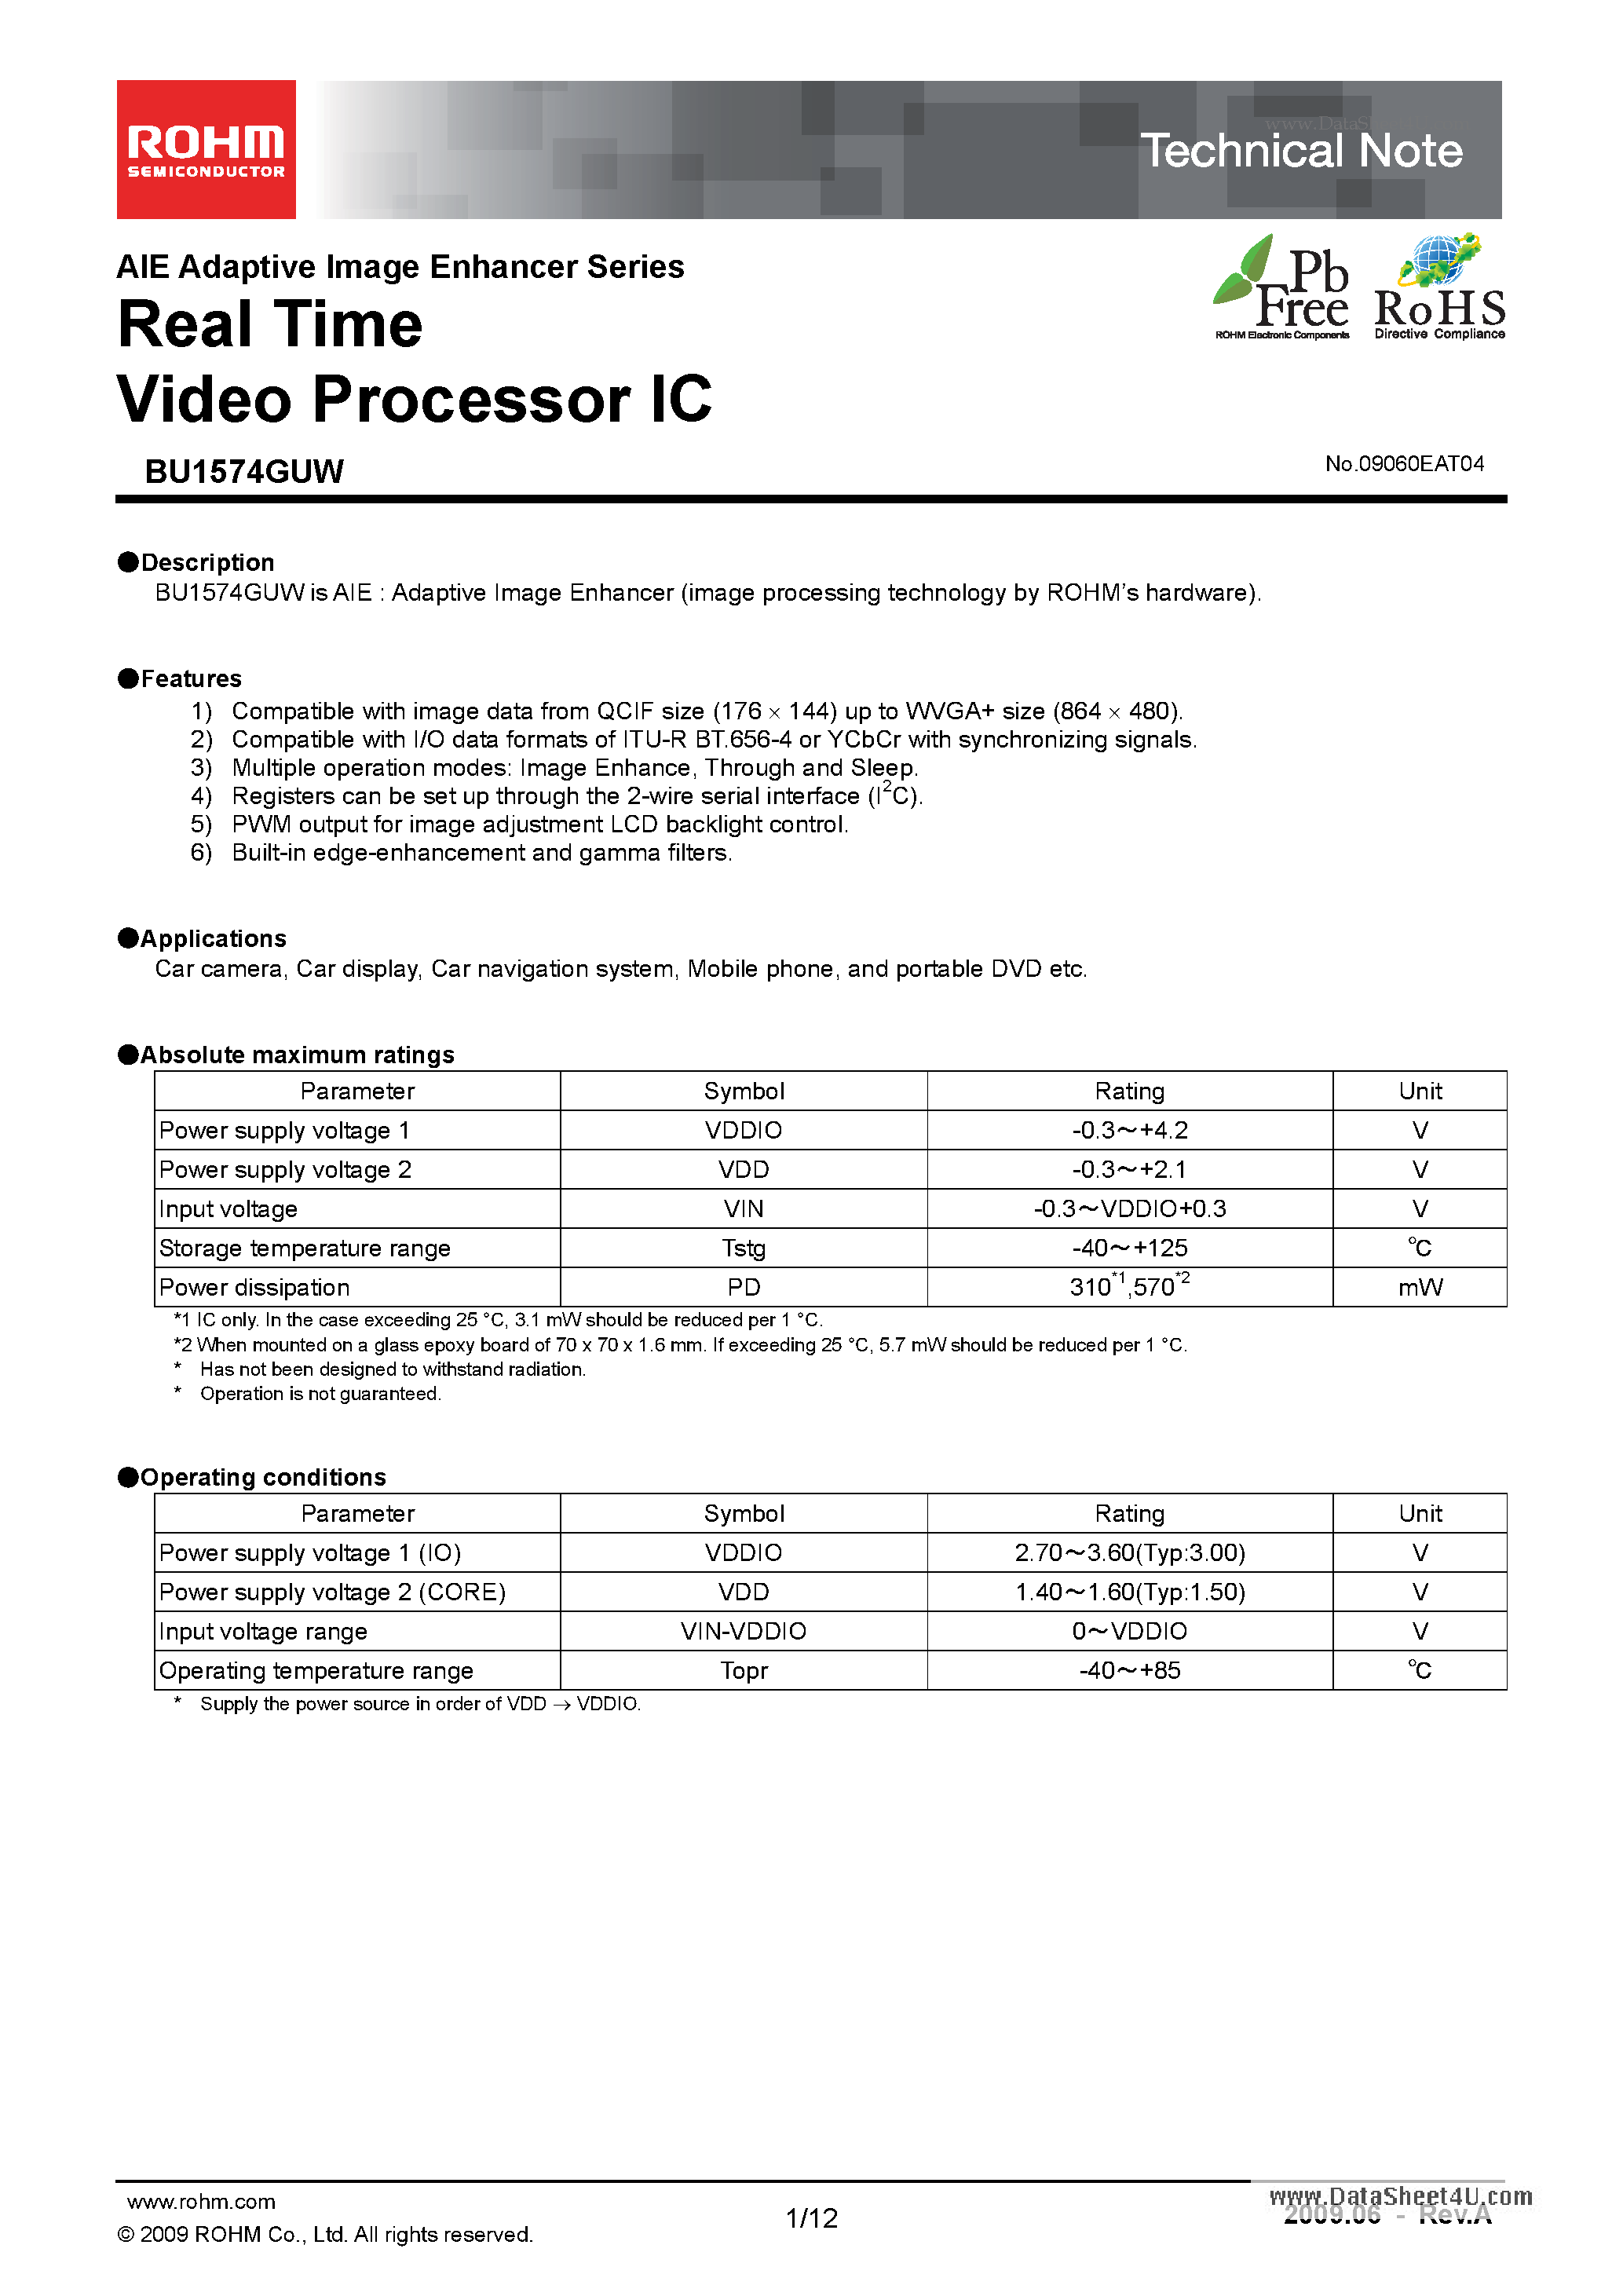 Даташит BU1574GUW - Real Time Video Processor ICs страница 1